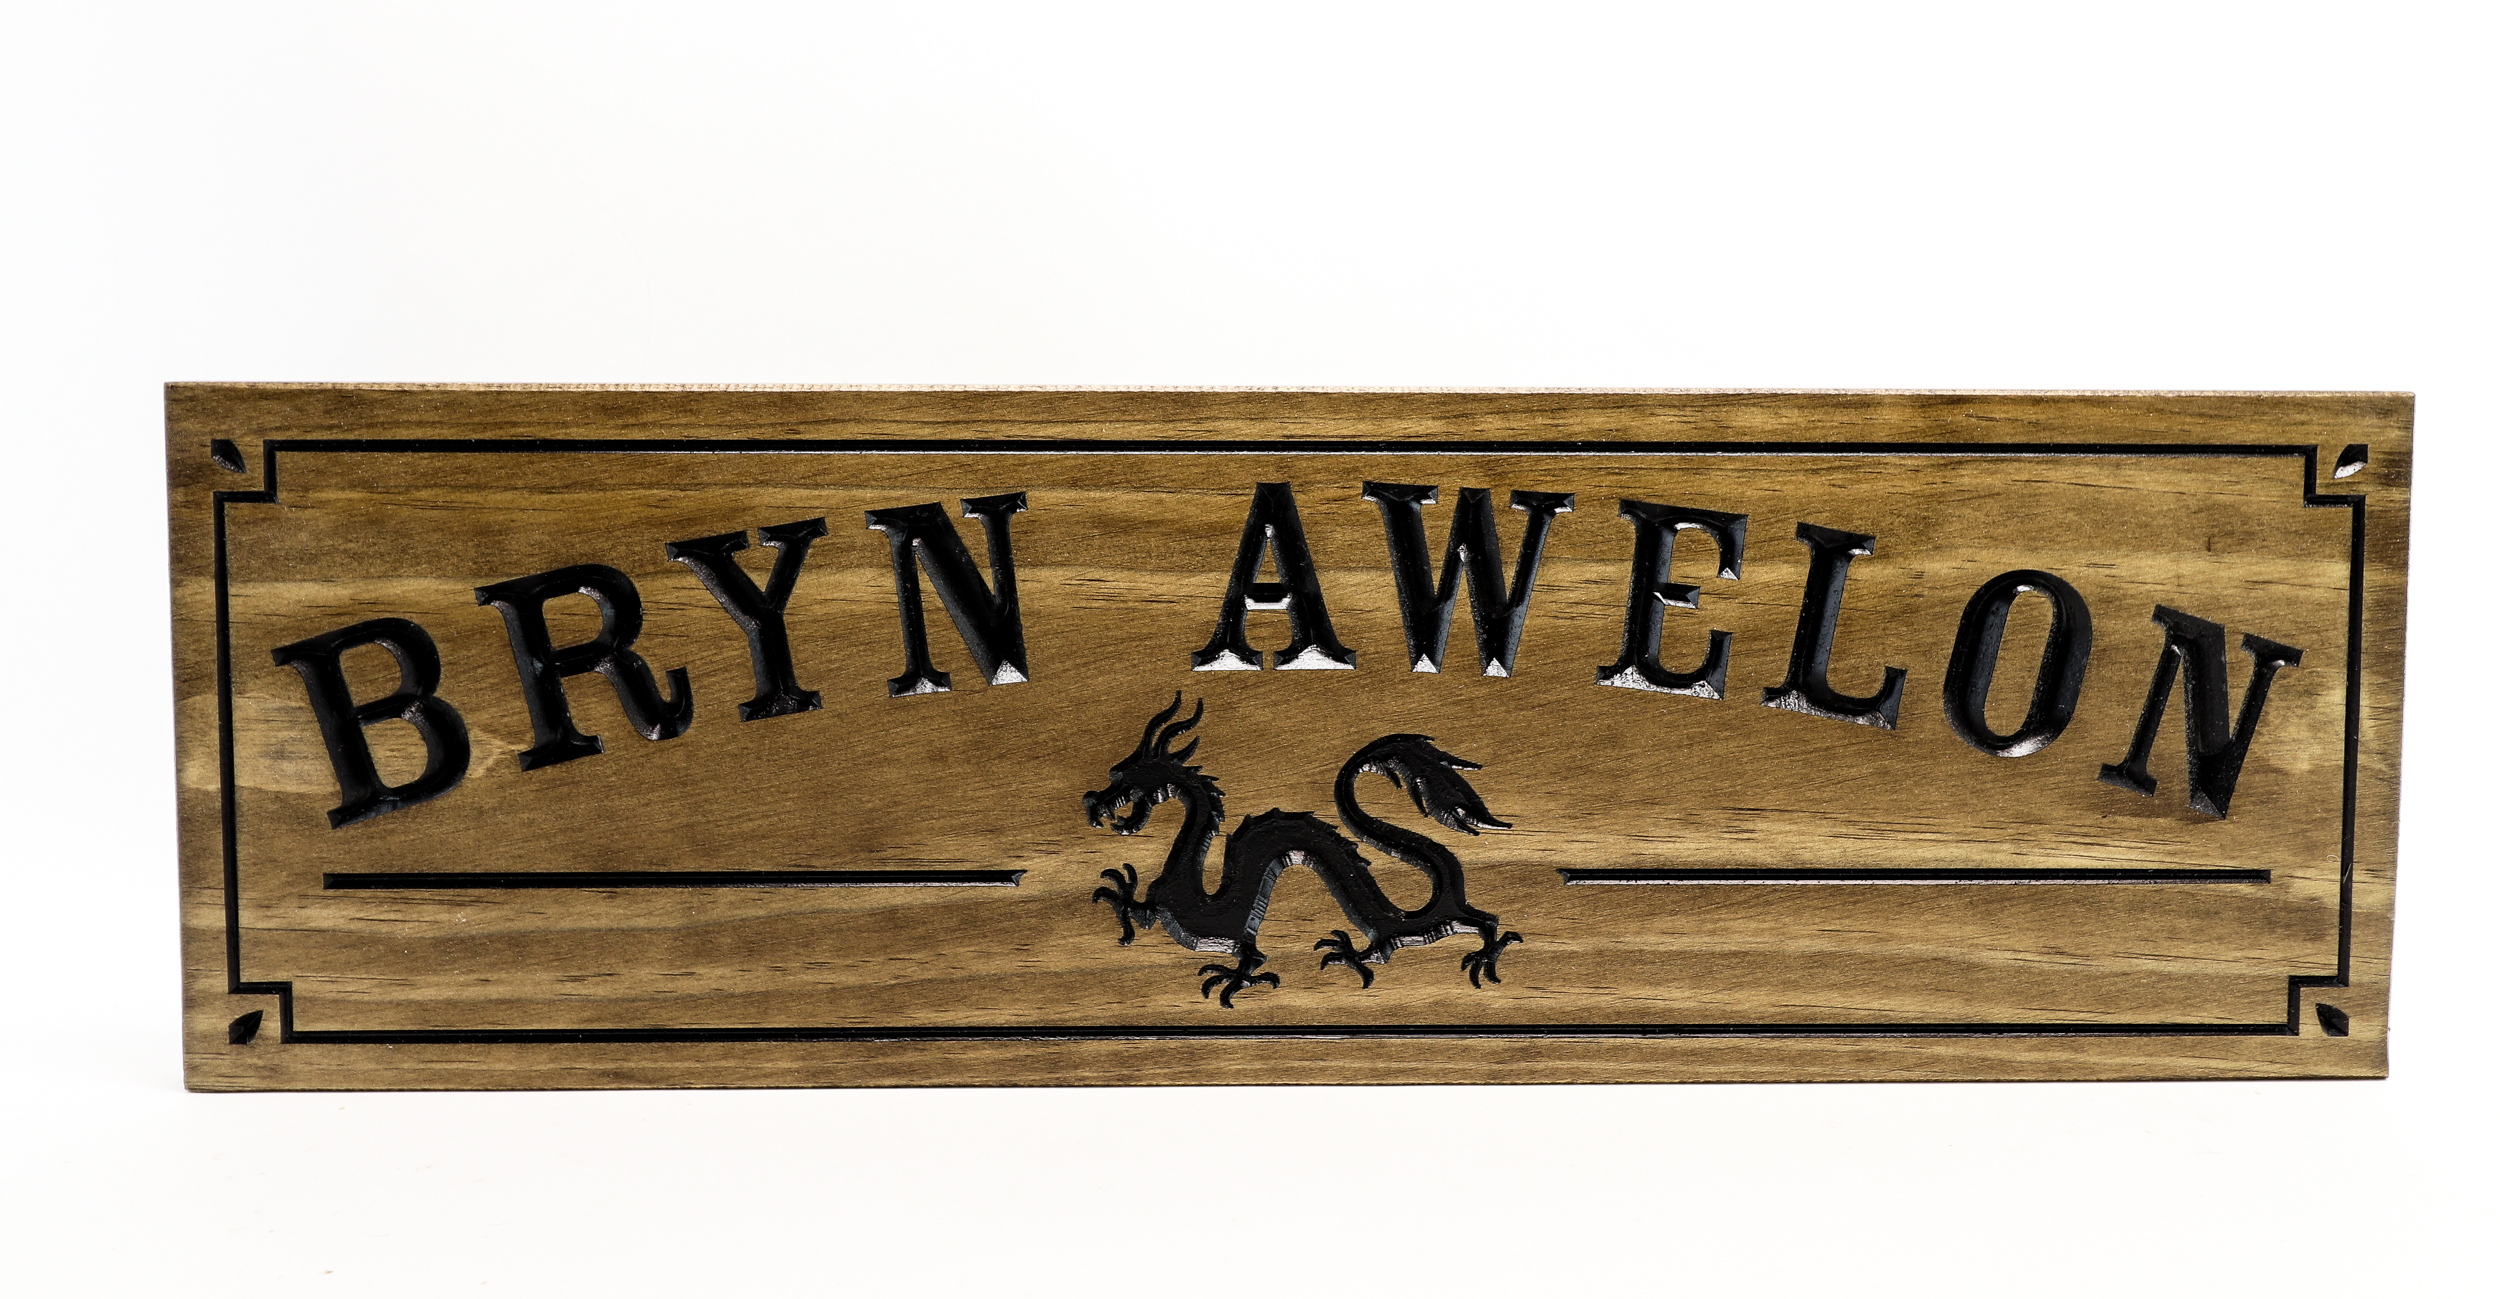 Welsh inspired custom sign